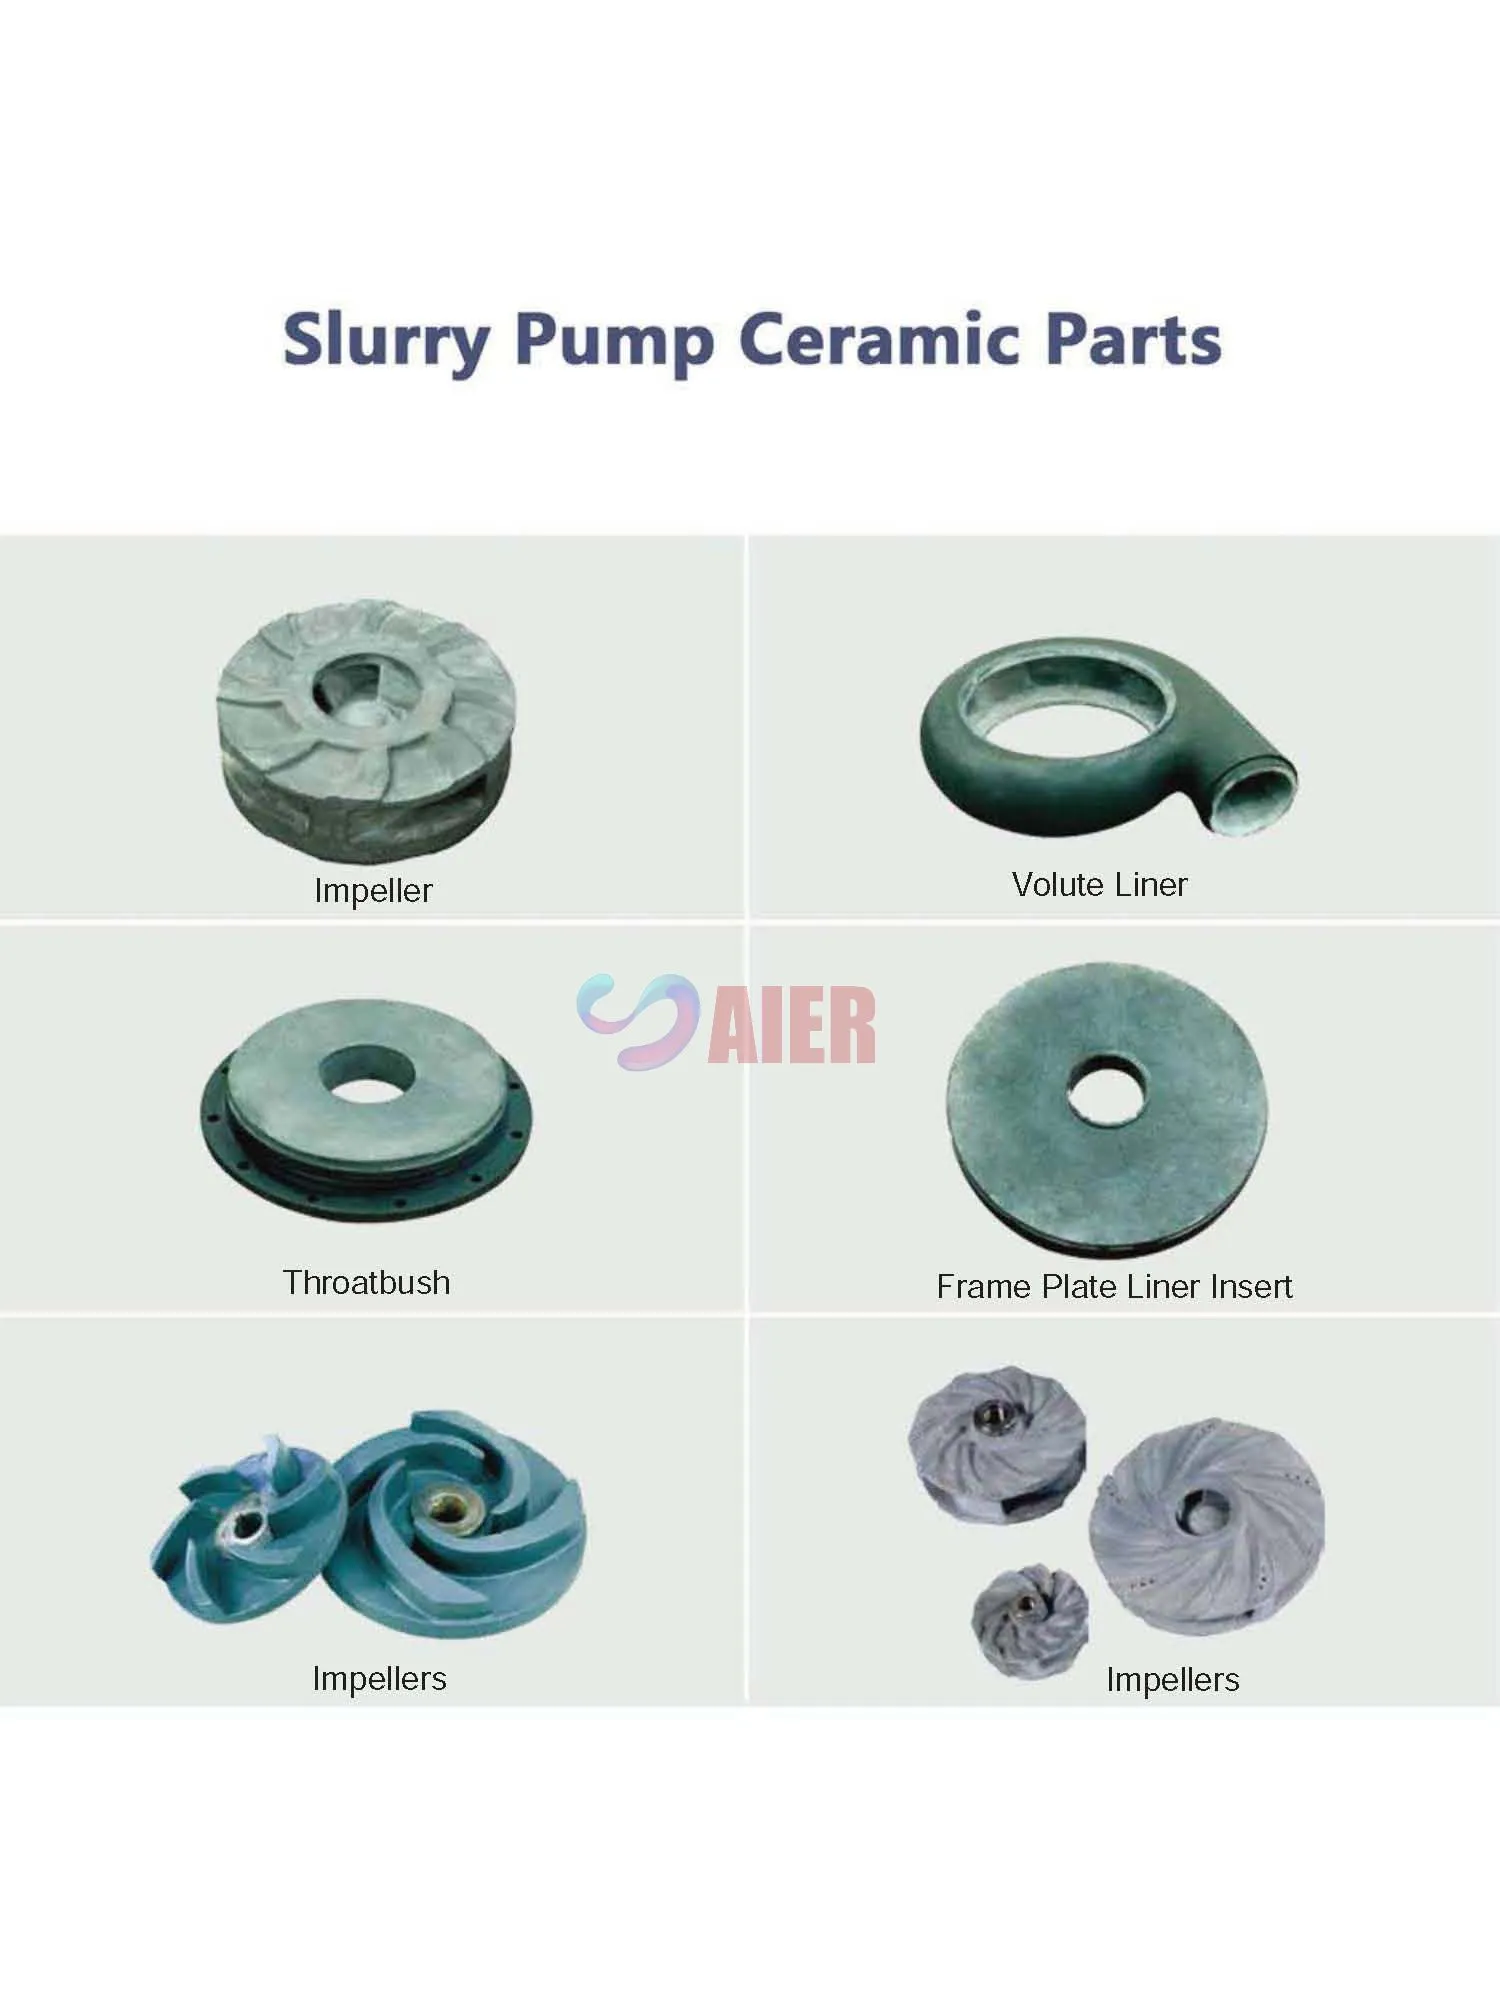 Slurry Pump Ceramic Parts.jpg